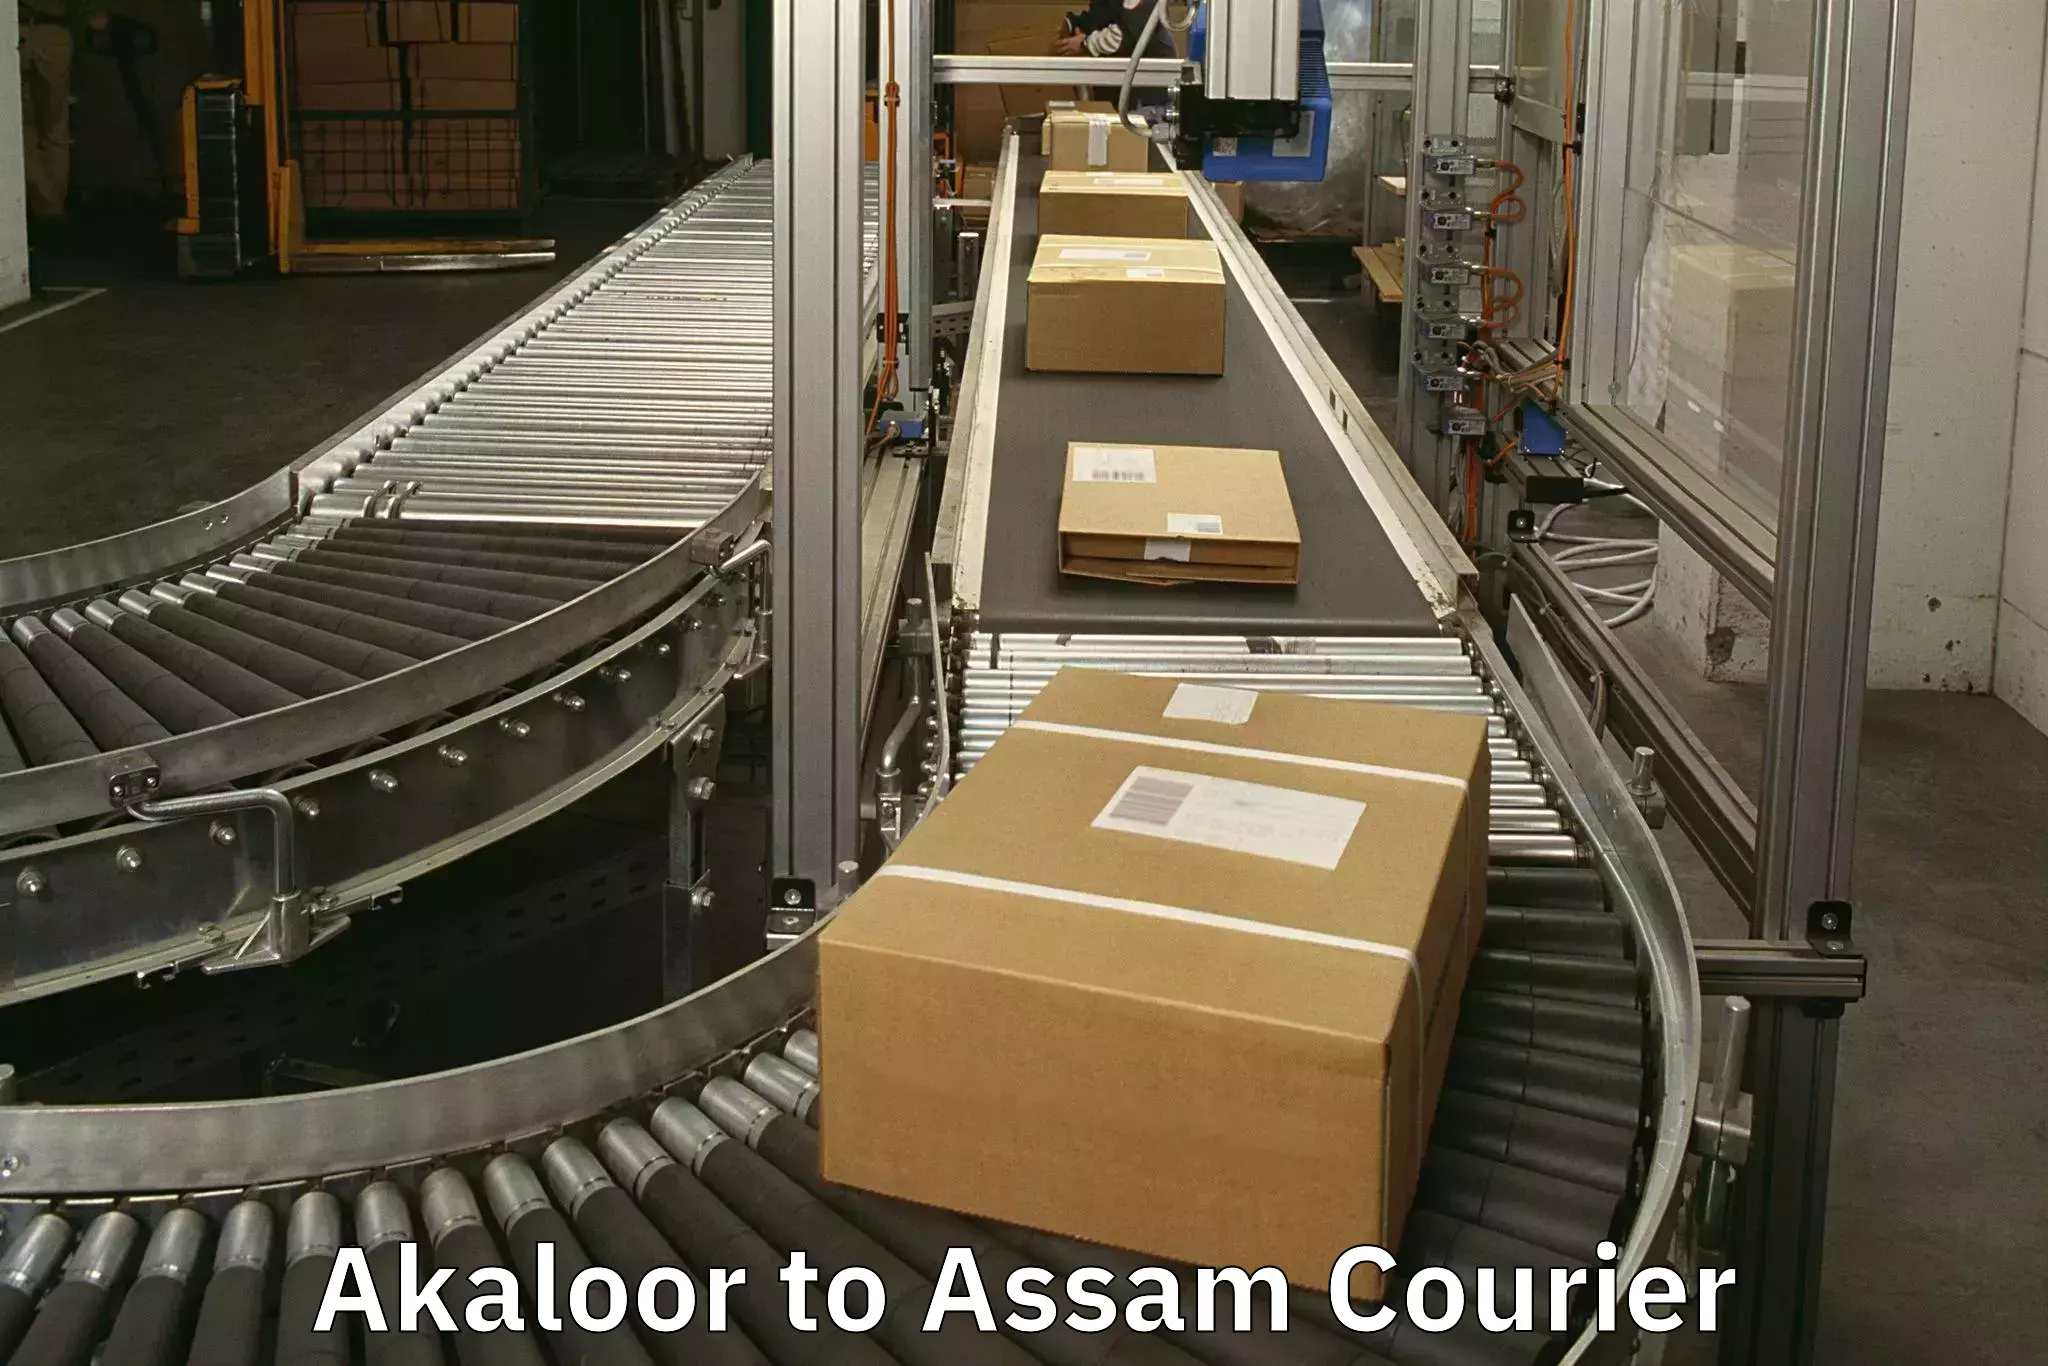 Baggage transport scheduler Akaloor to Assam